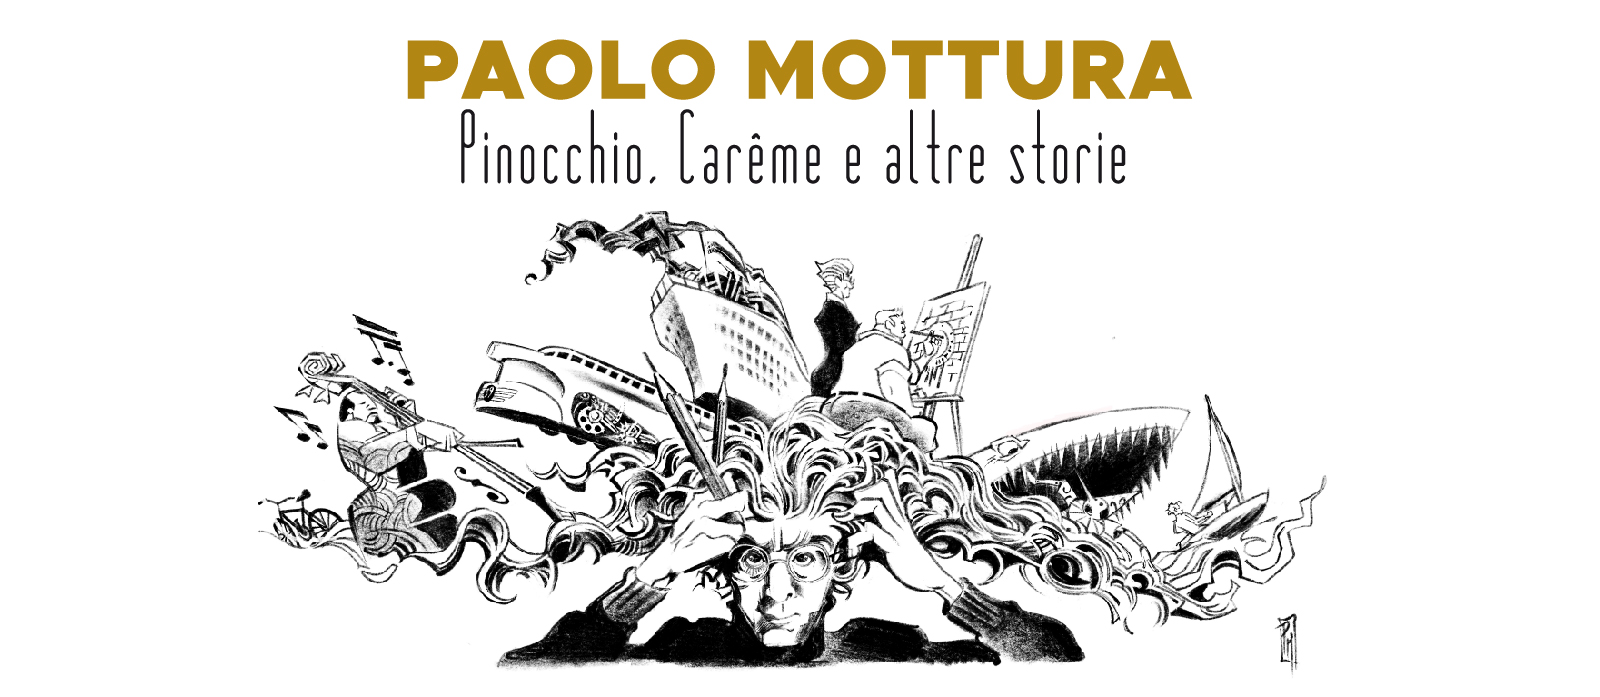 Paolo Mottura. Pinocchio, Carême e altre storie